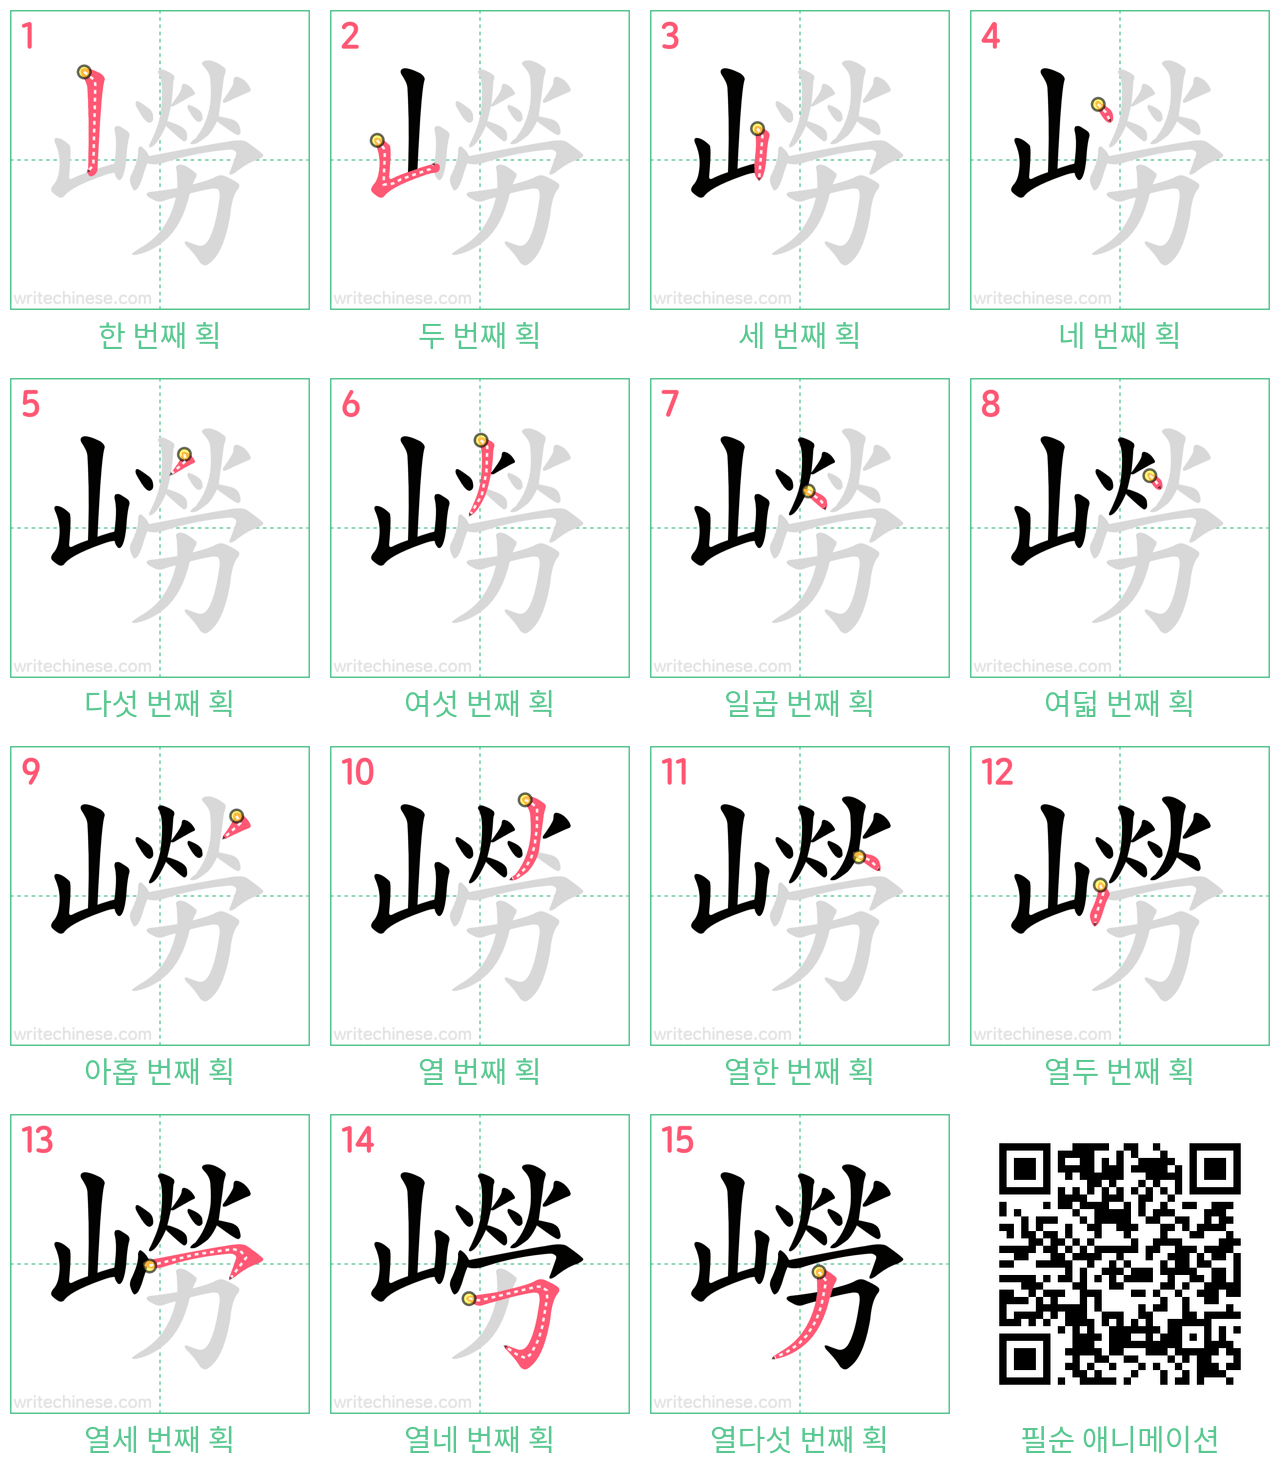 嶗 step-by-step stroke order diagrams